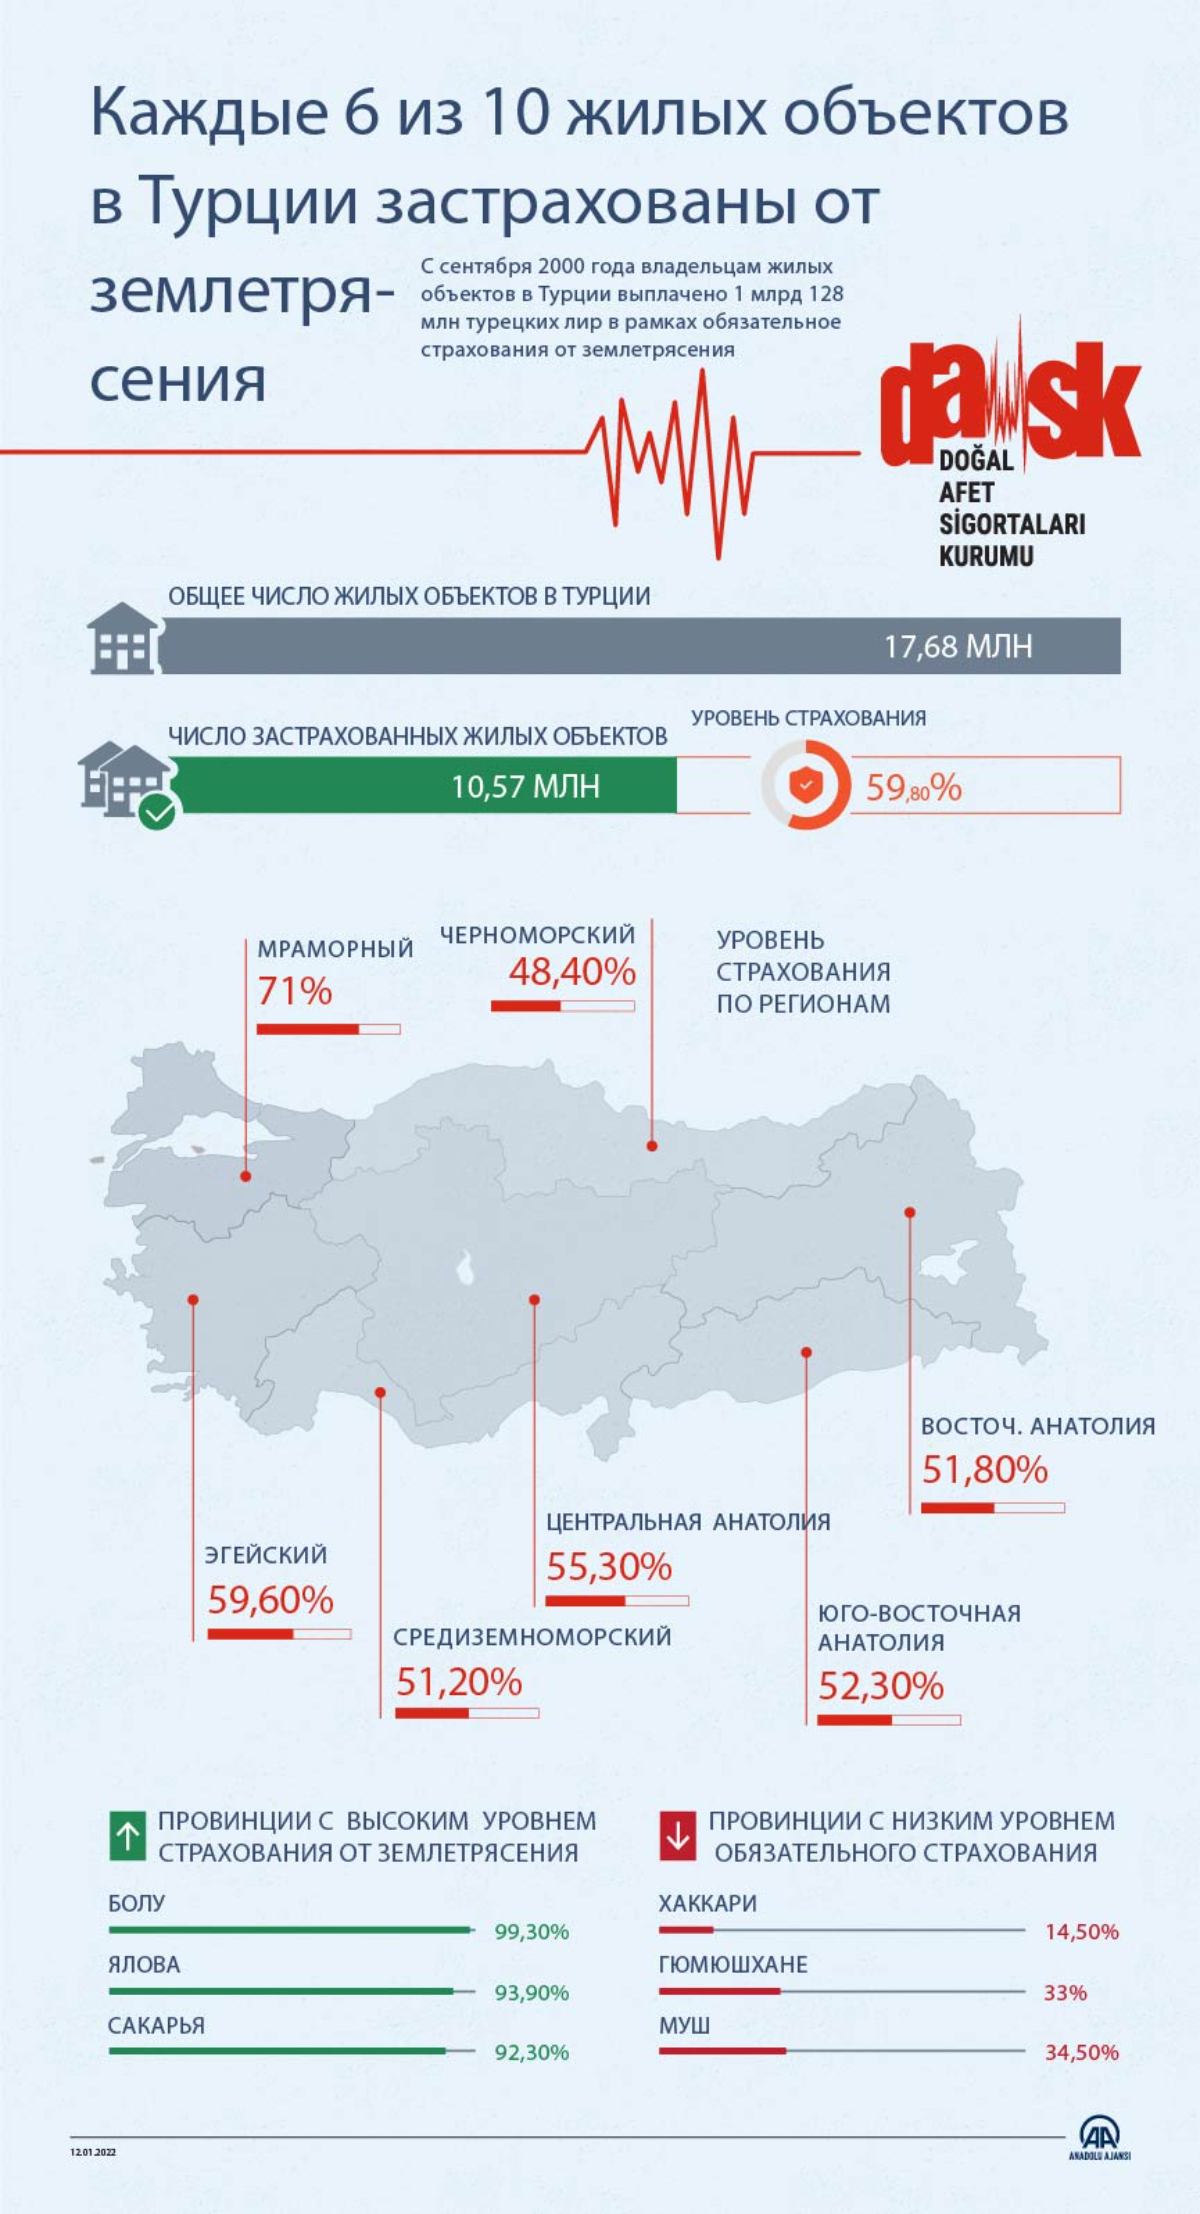 Каждые шесть из 10 жилых объектов в Турции застрахованы от землетрясения